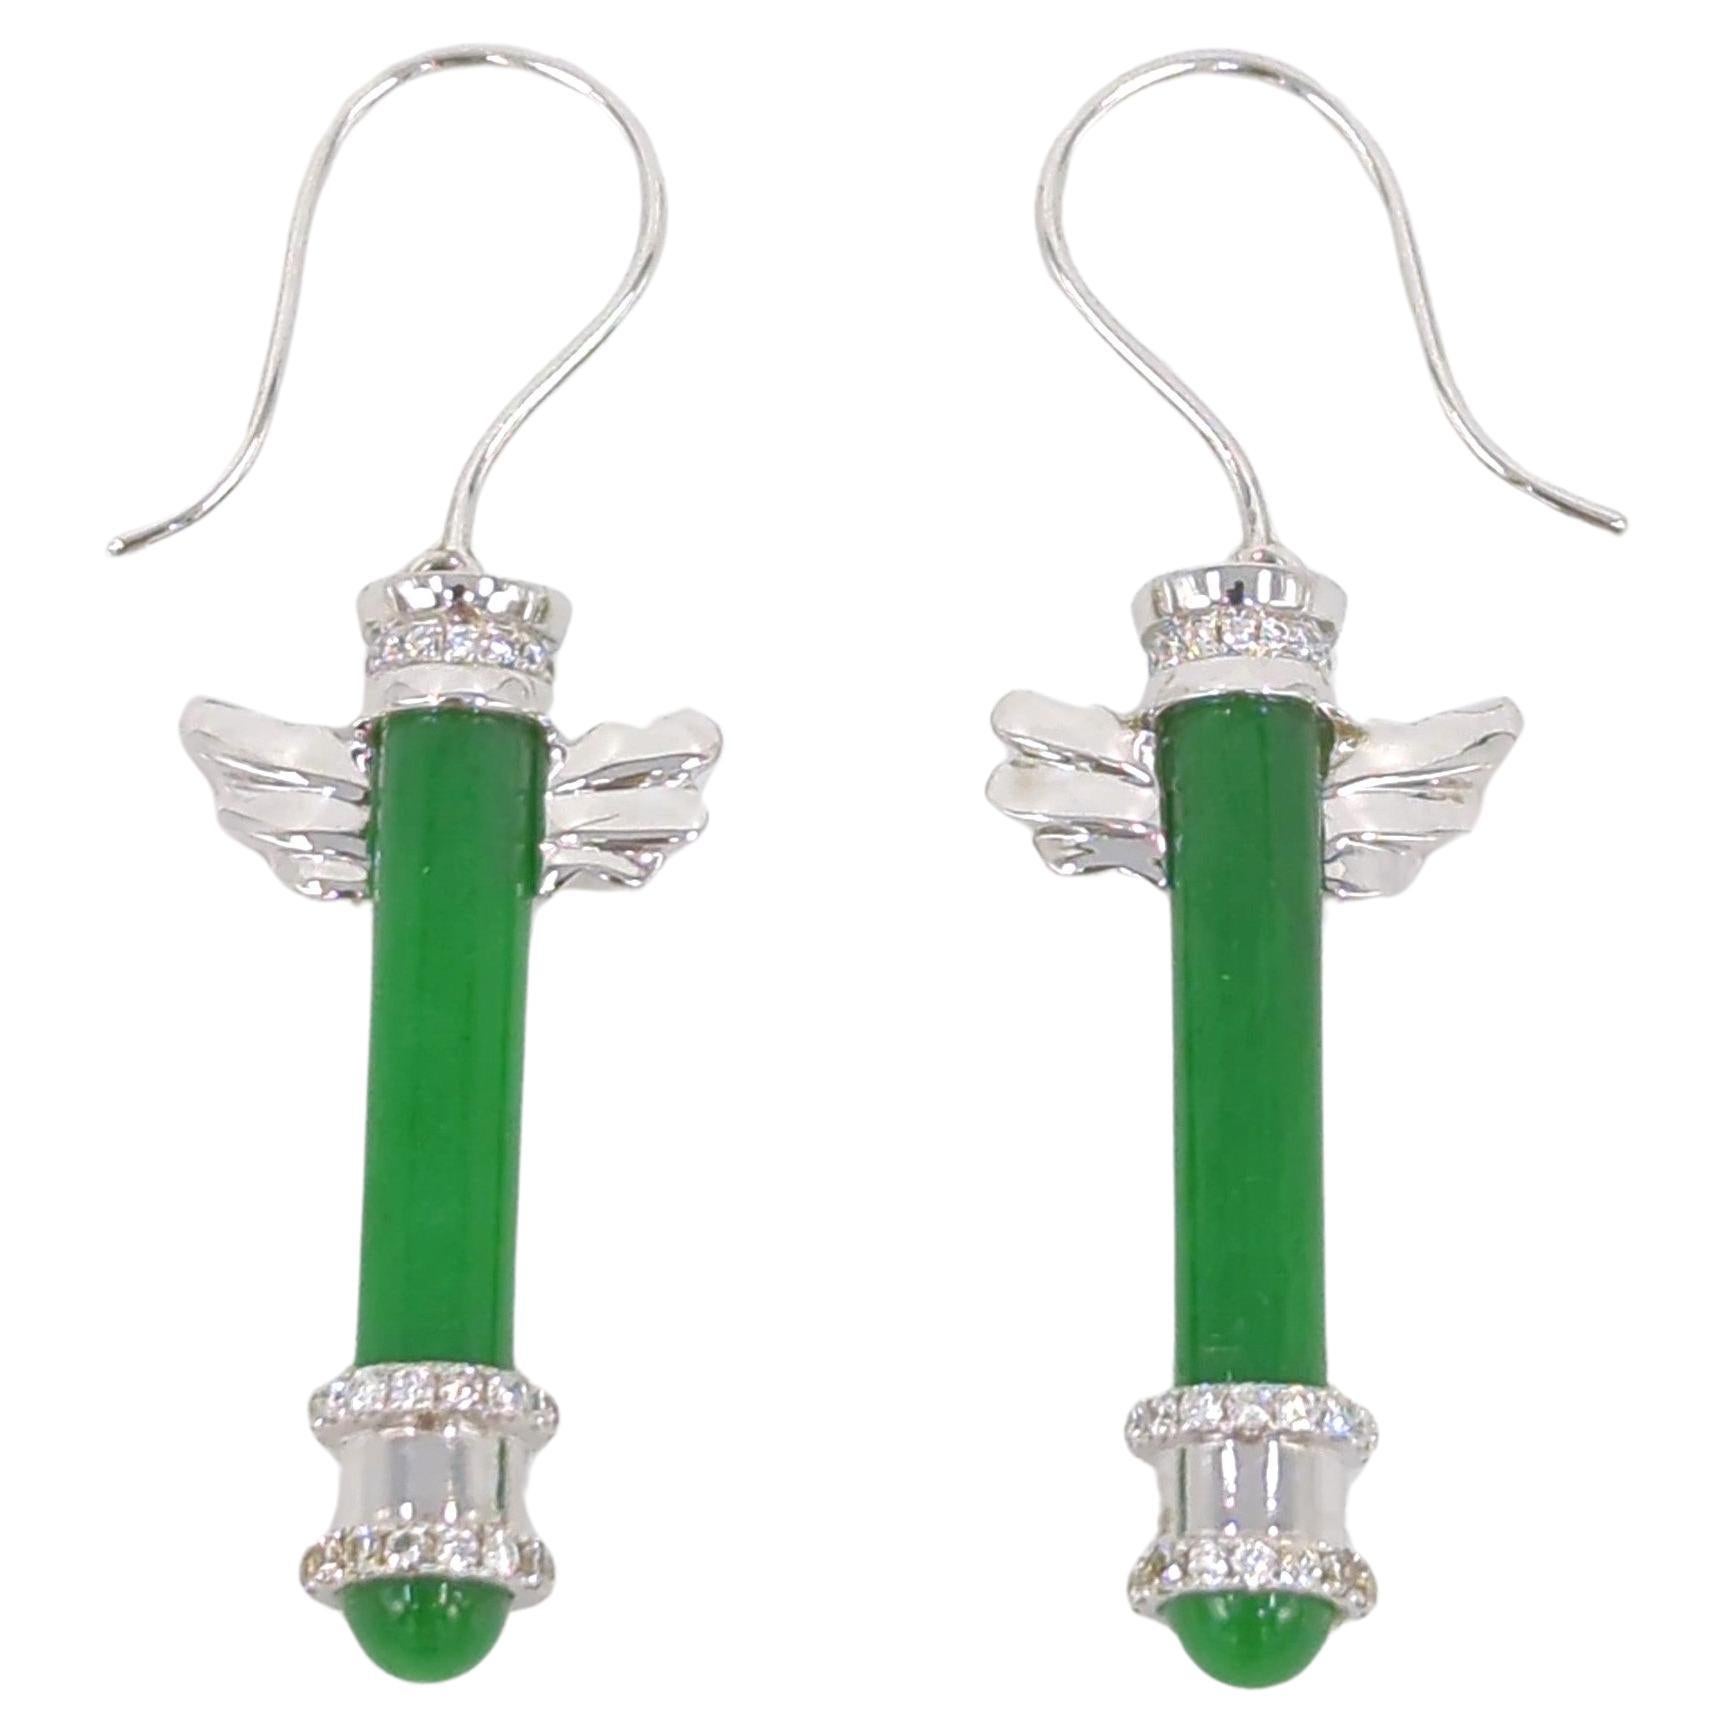 18K WG Emerald Green Jadeite Diamond Earrings A-Grade GIA Gemologist Appraisal For Sale